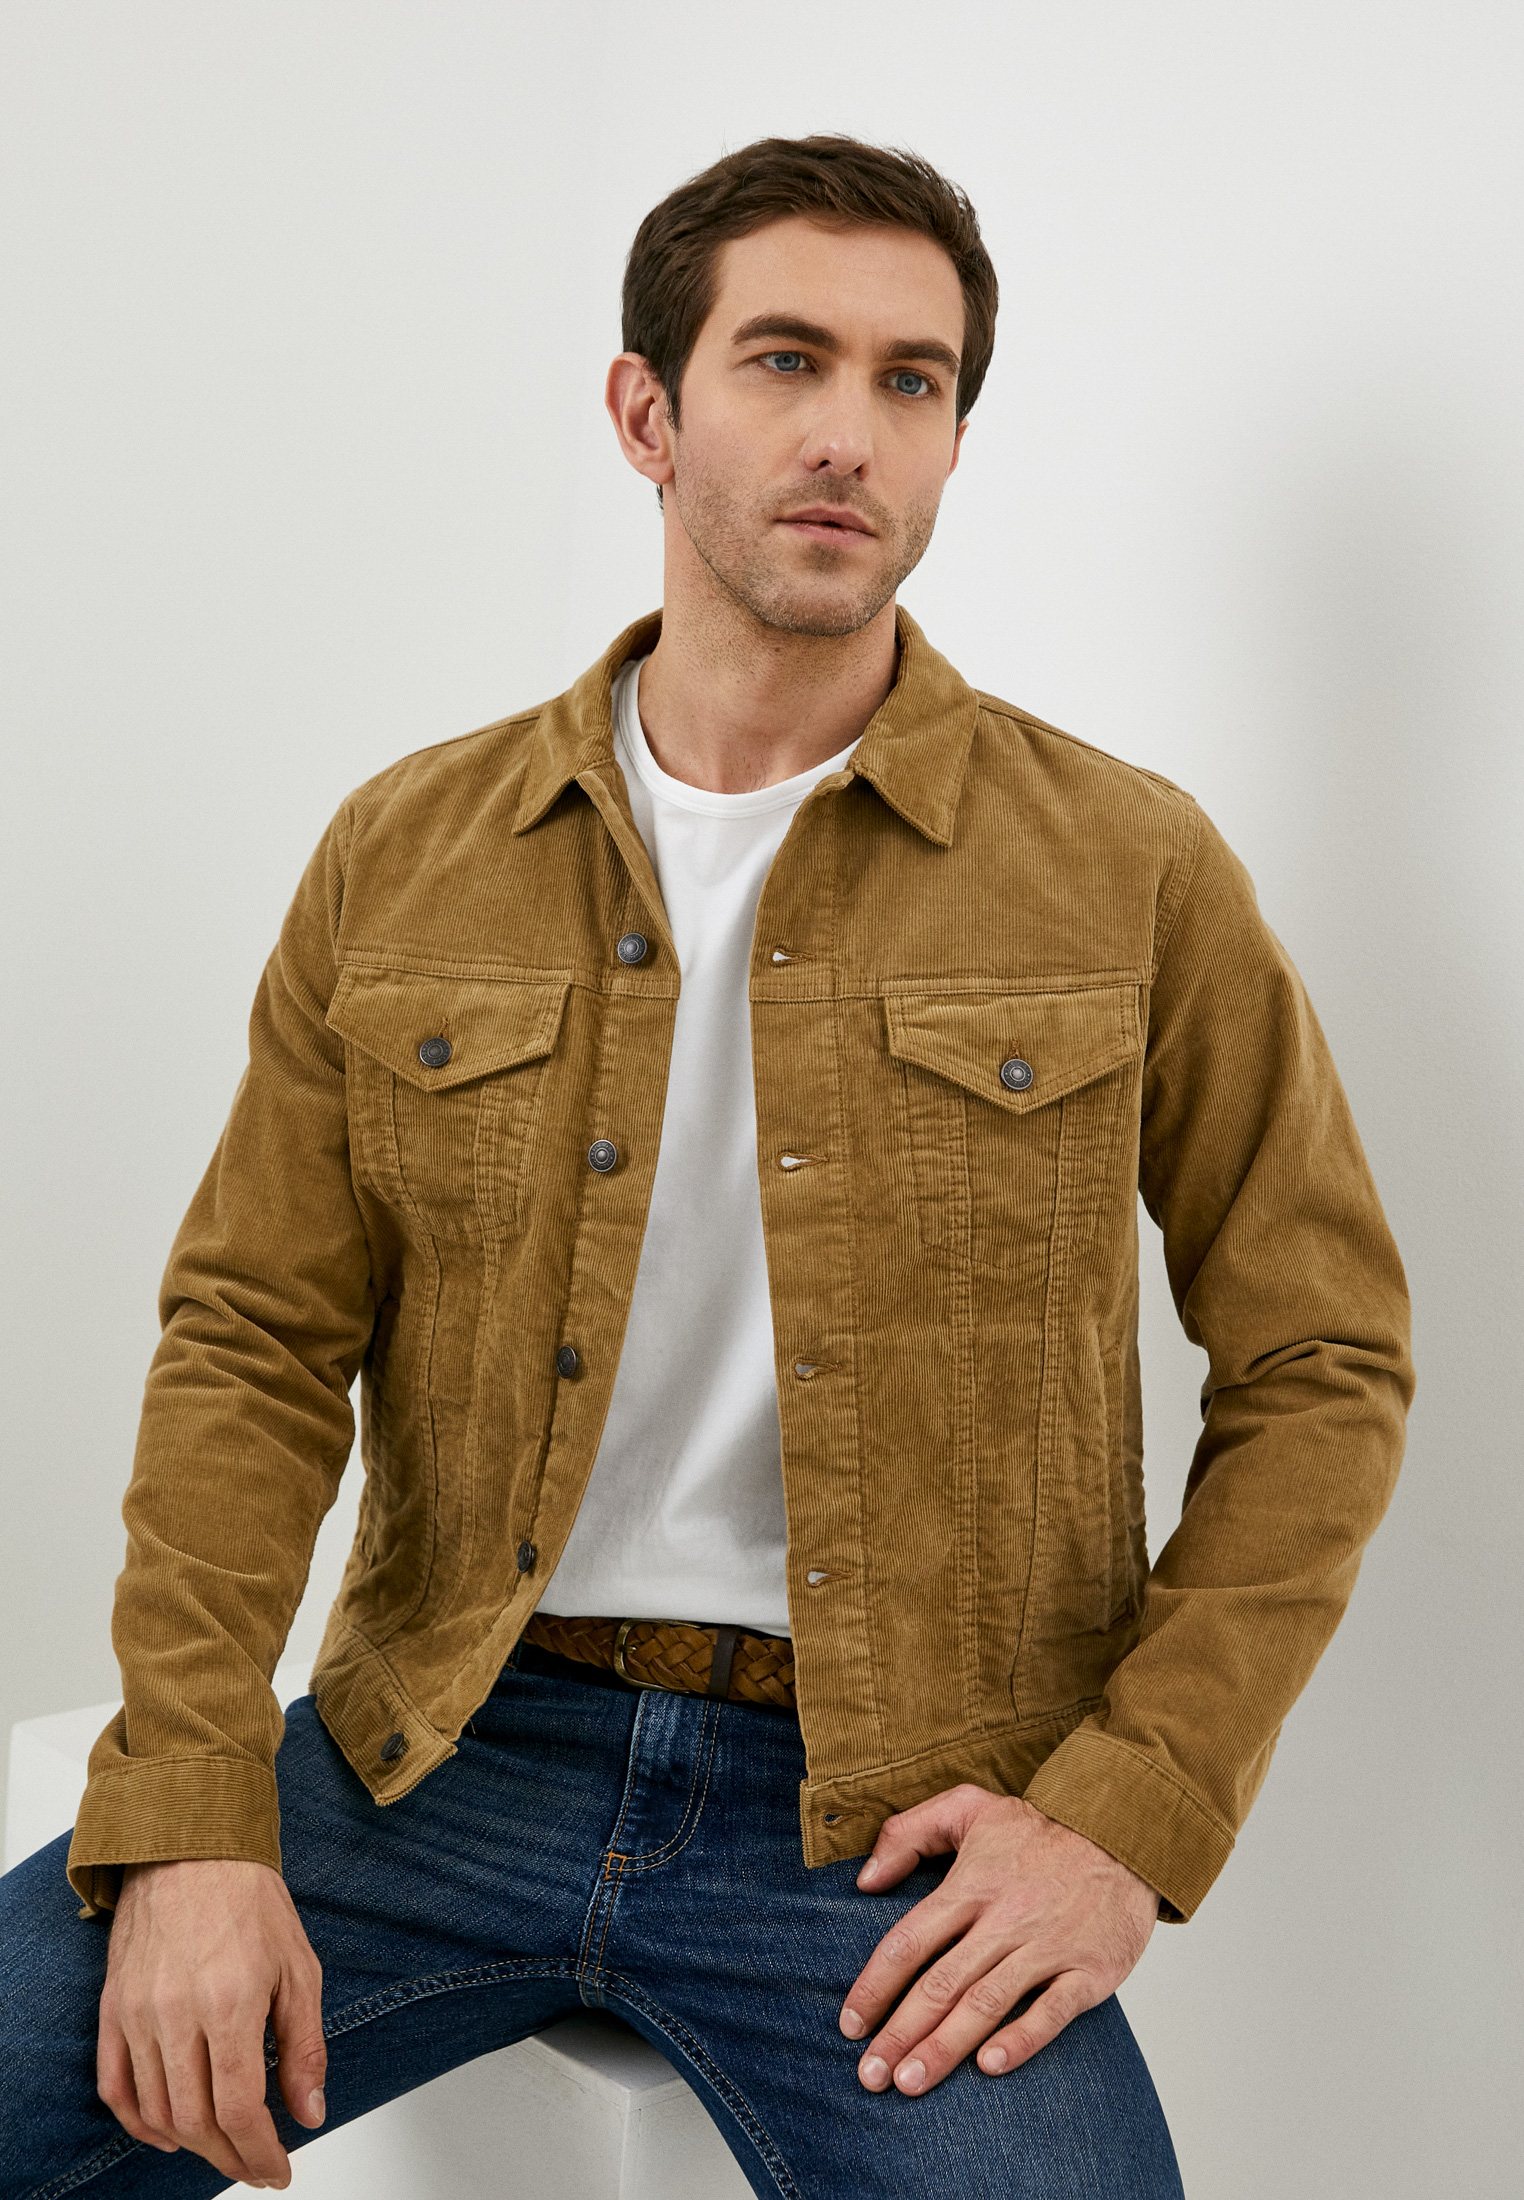 Куртка Gap, цвет: коричневый, RTLAAZ613302 — купить в интернет-магазине Lamoda